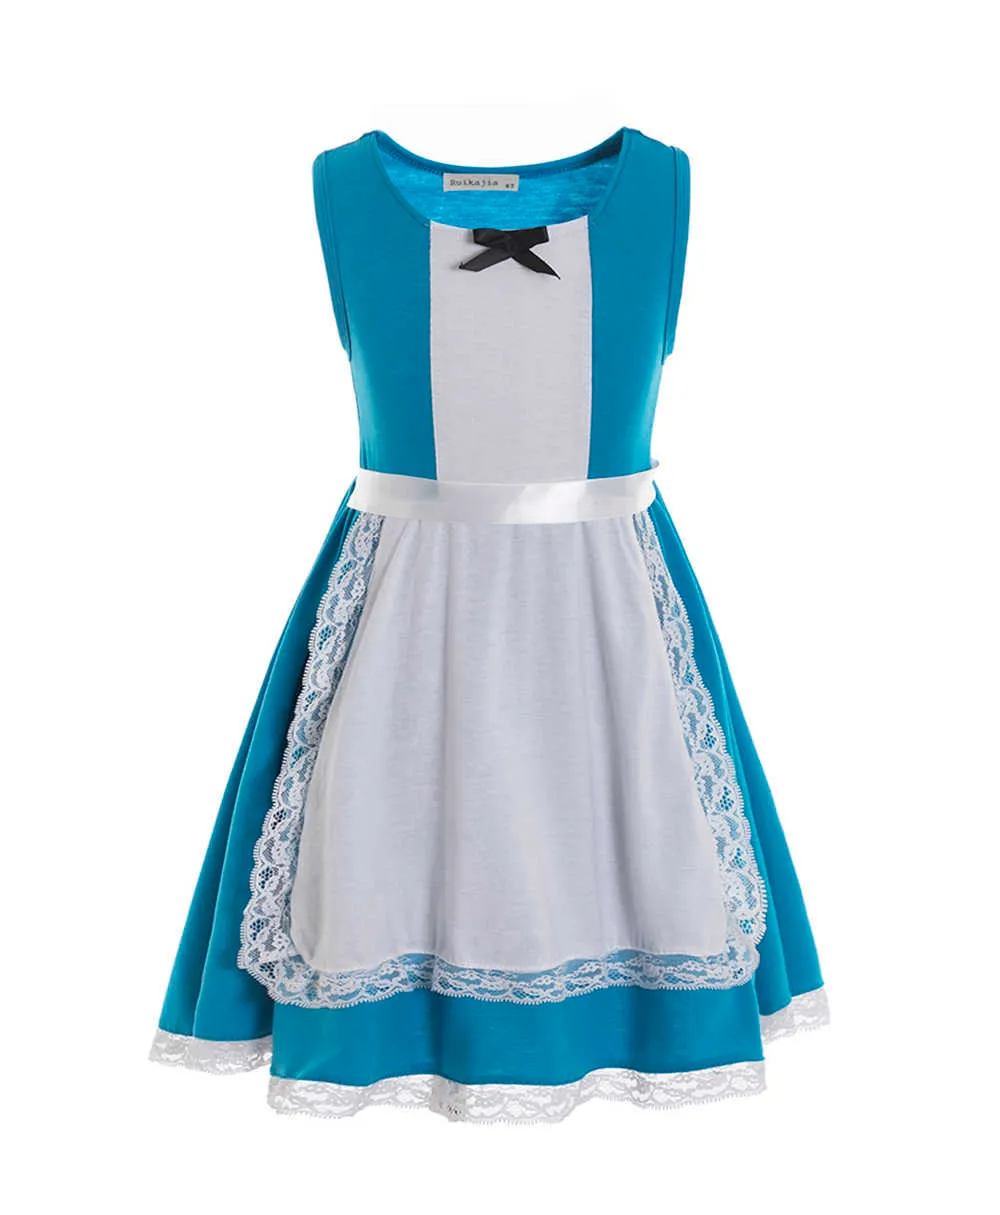 Alice robe de soirée costume d'halloween fête d'anniversaire pays des merveilles mariage bleu enfant en bas âge robe filles vêtements Q0716